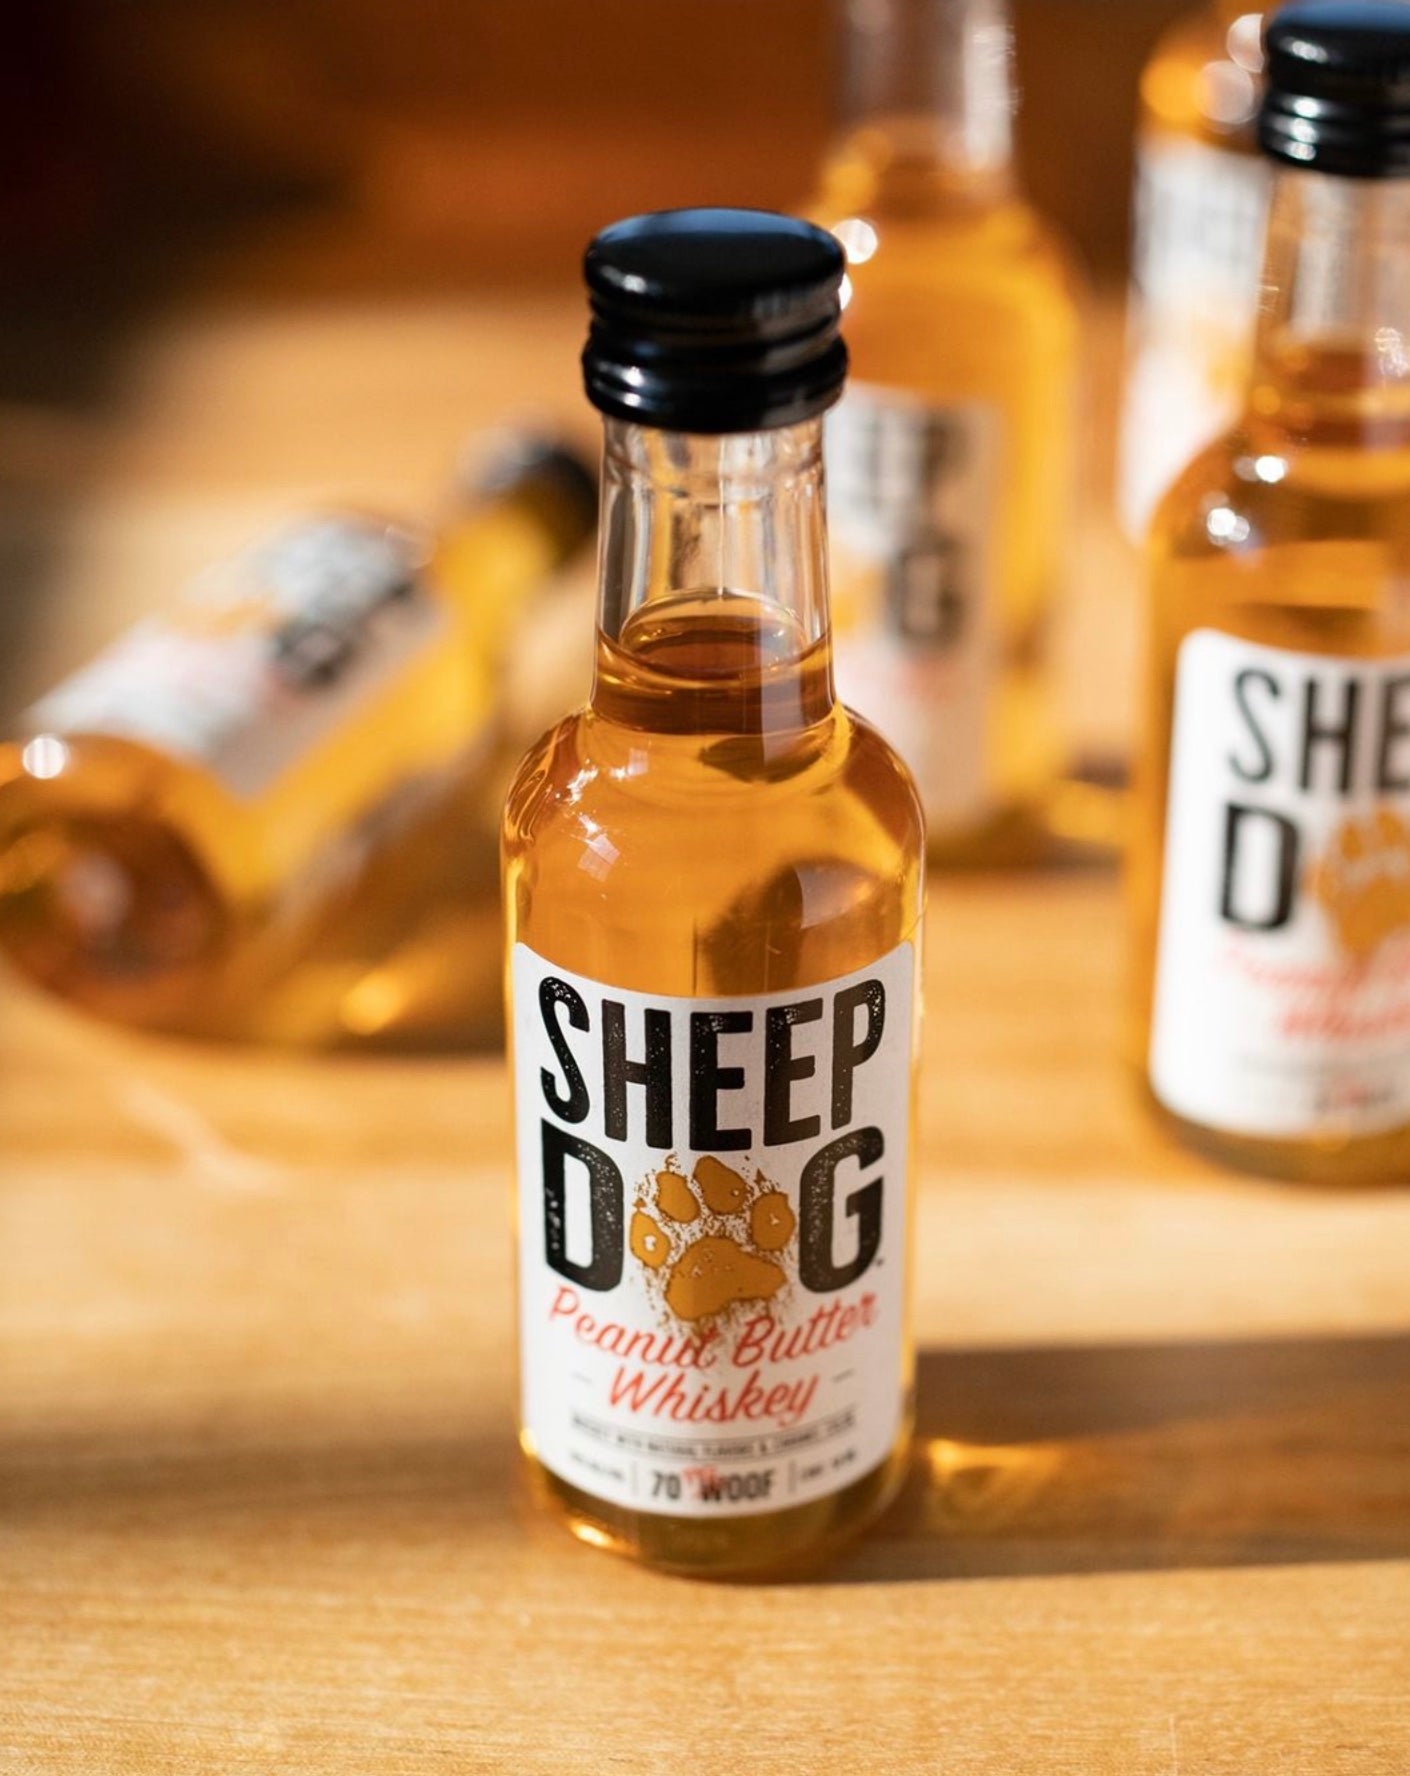 Sheep Dog Peanut Butter Whiskey 50ml Sleeve (12 bottles)